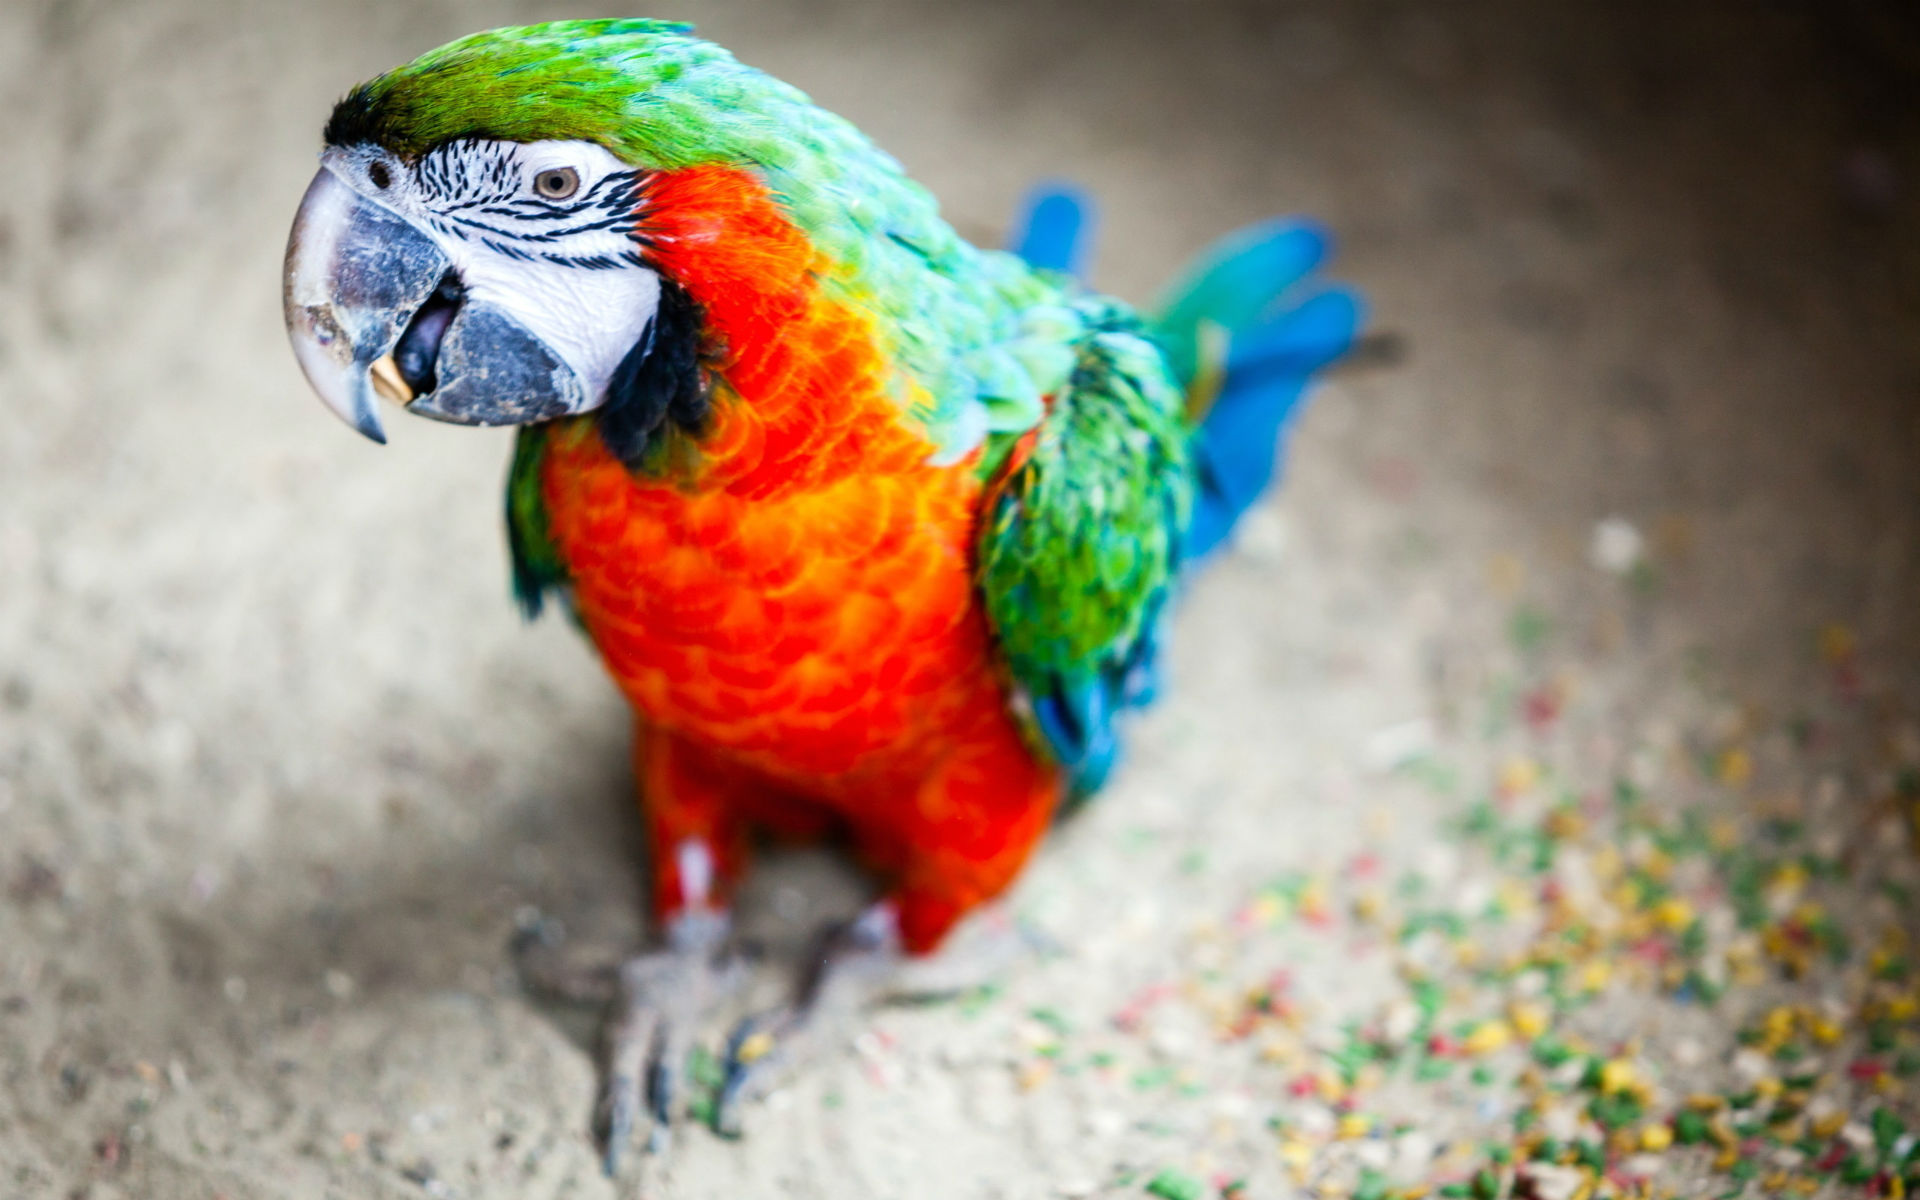 Descarga gratuita de fondo de pantalla para móvil de Animales, Pájaro, Guacamayo.